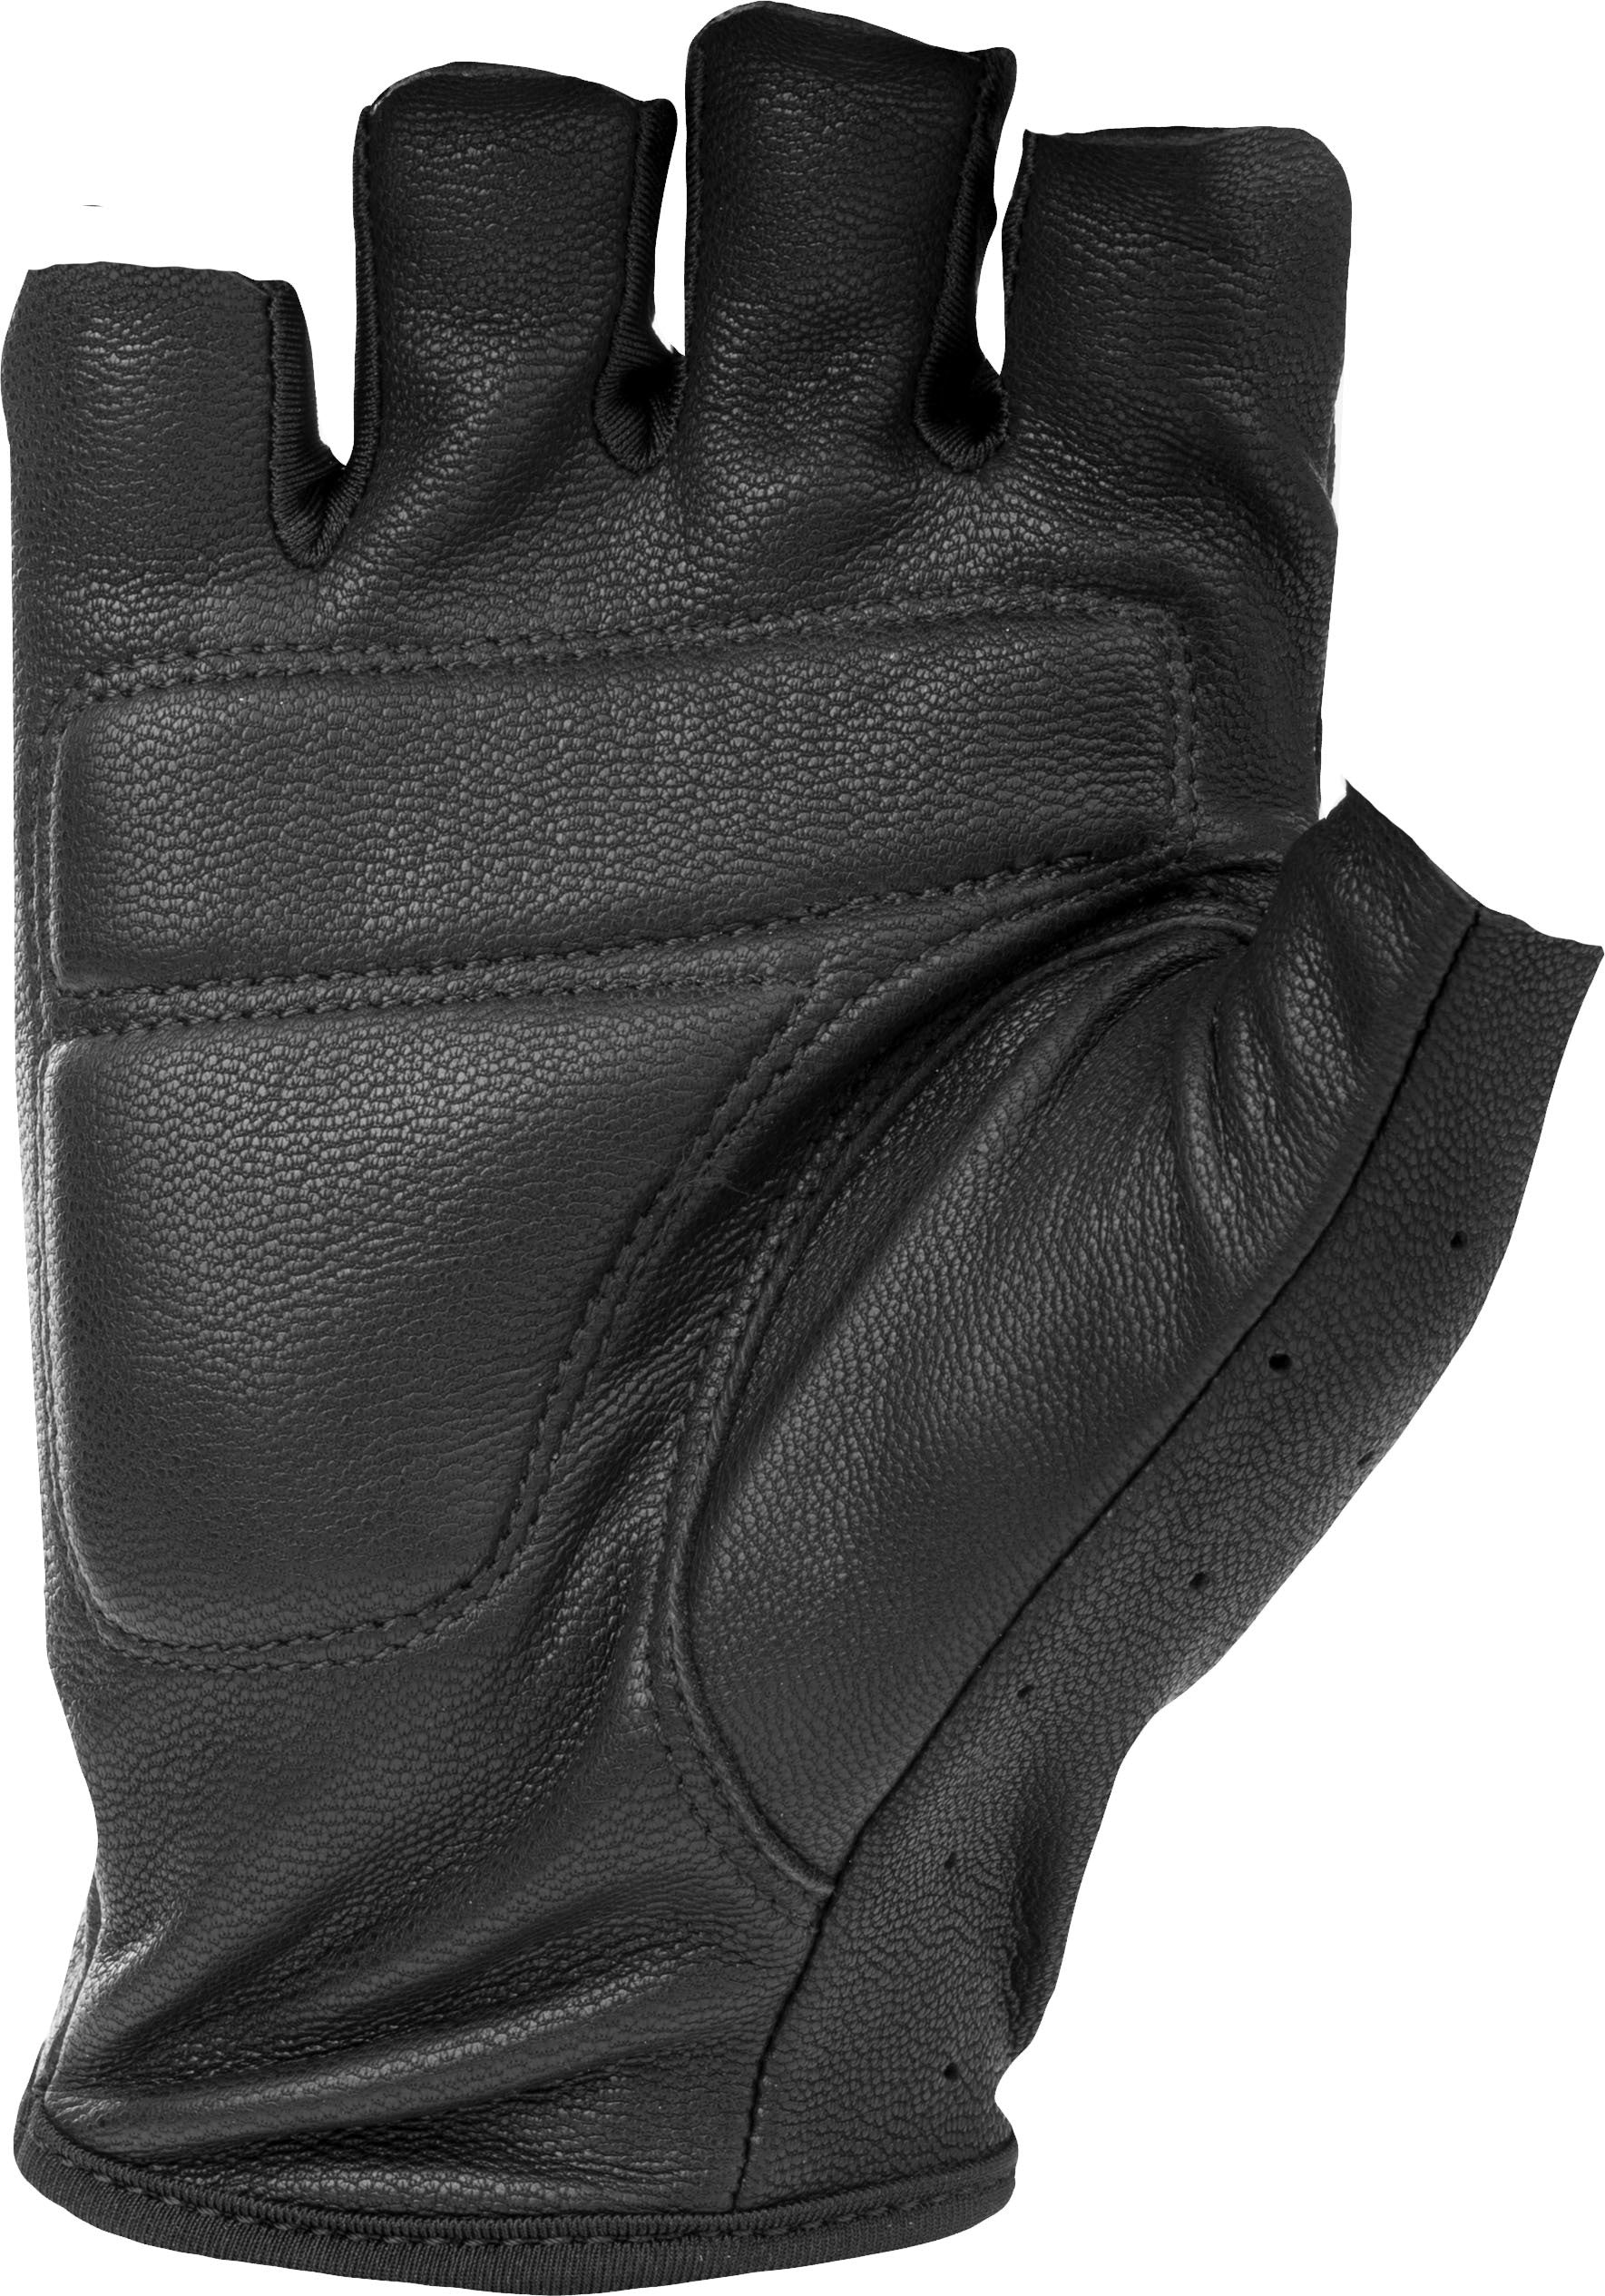 Ranger Gloves Black Sm